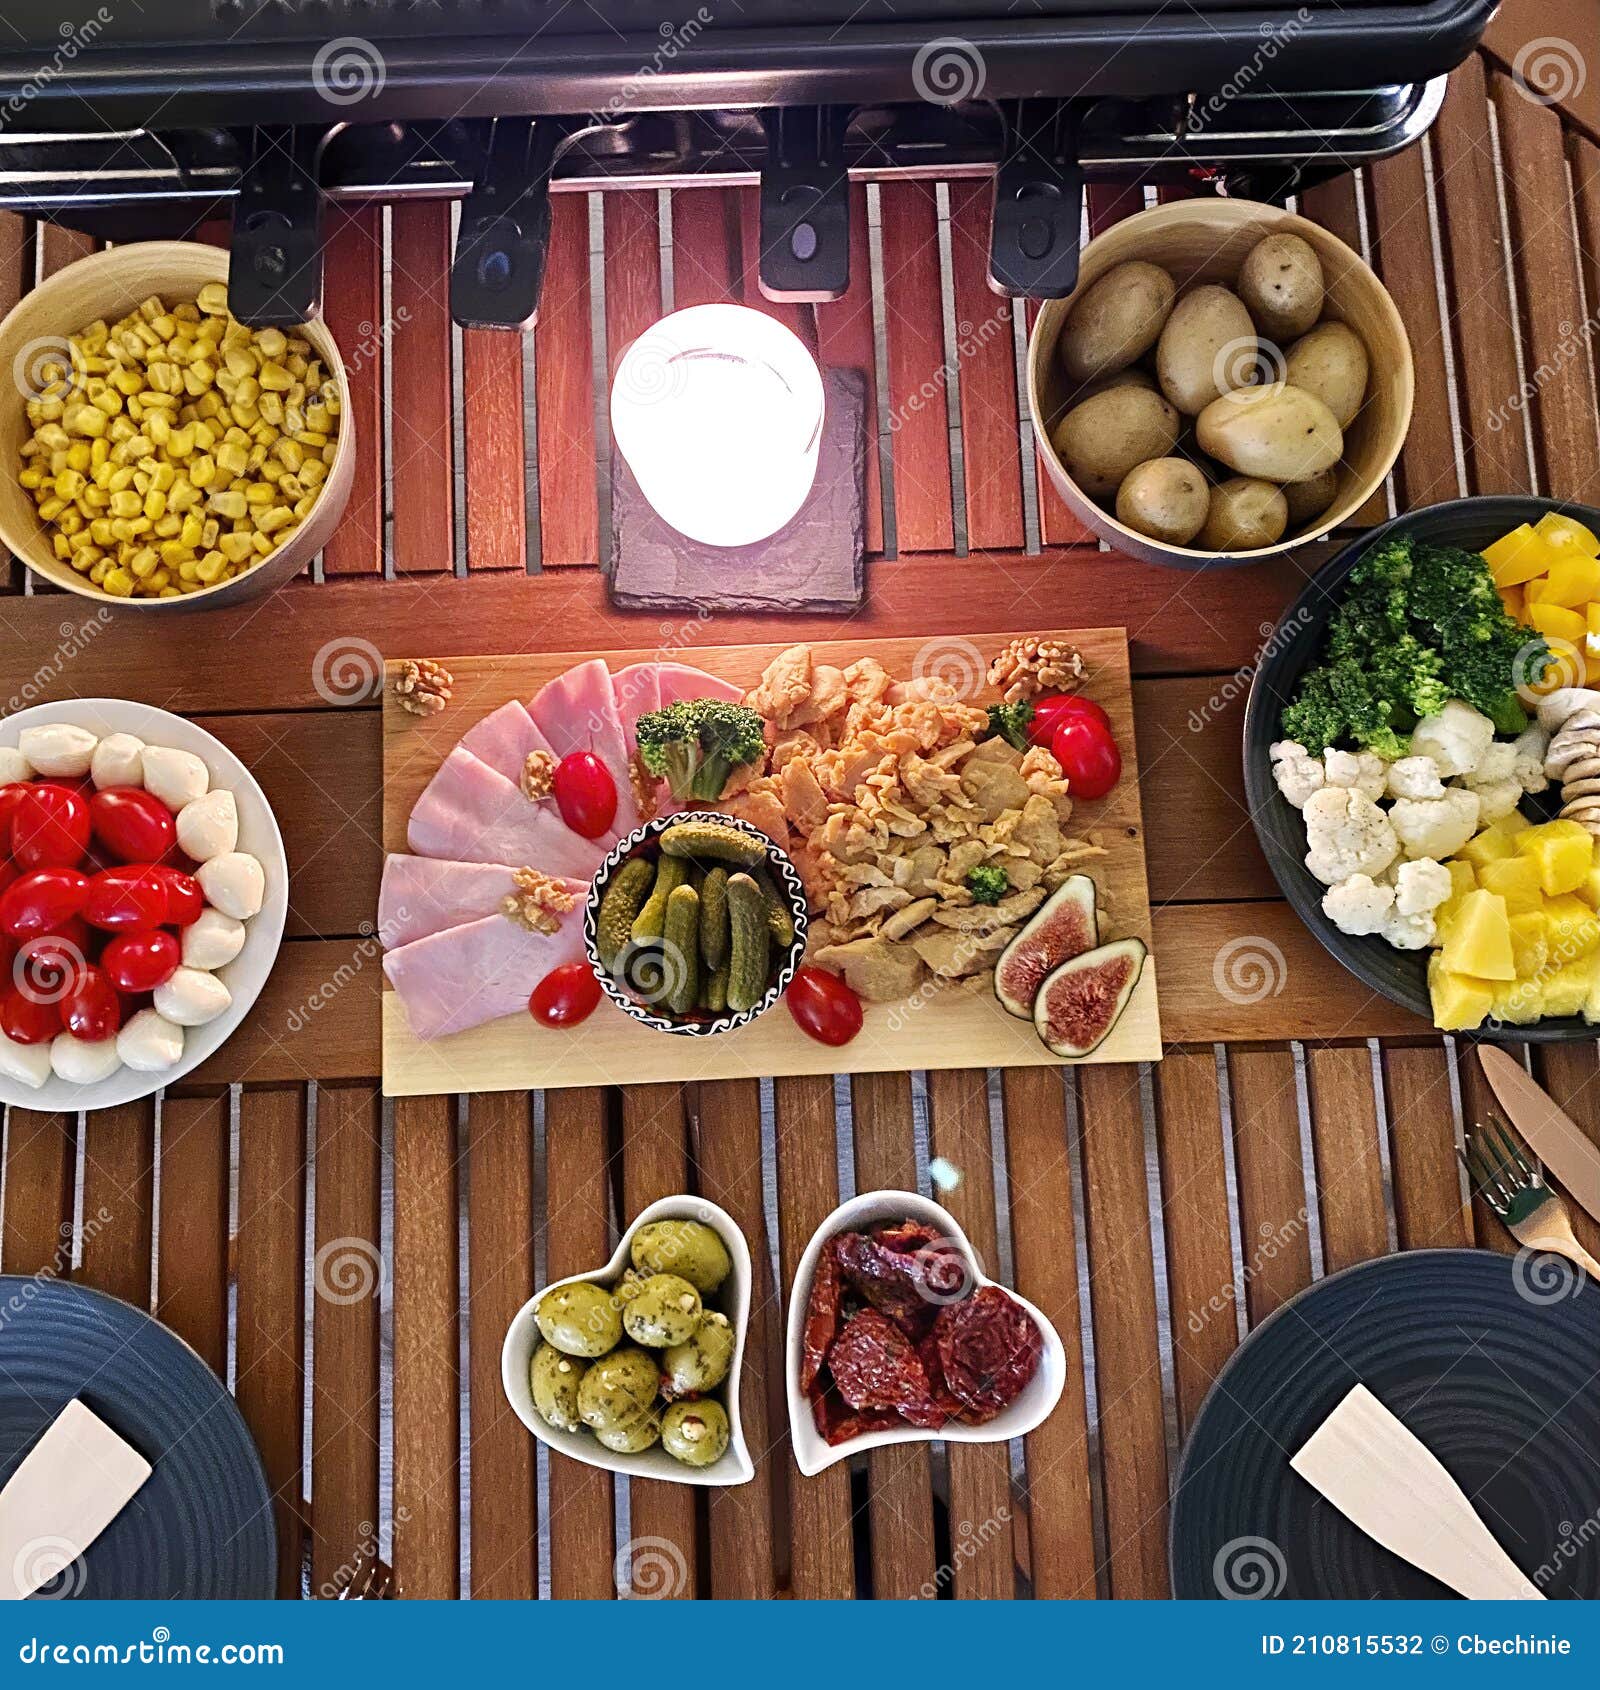 Une Table En Bois Avec Divers Ingrédients Pour Une Raclette Photo stock -  Image du nutrition, mélange: 210815532